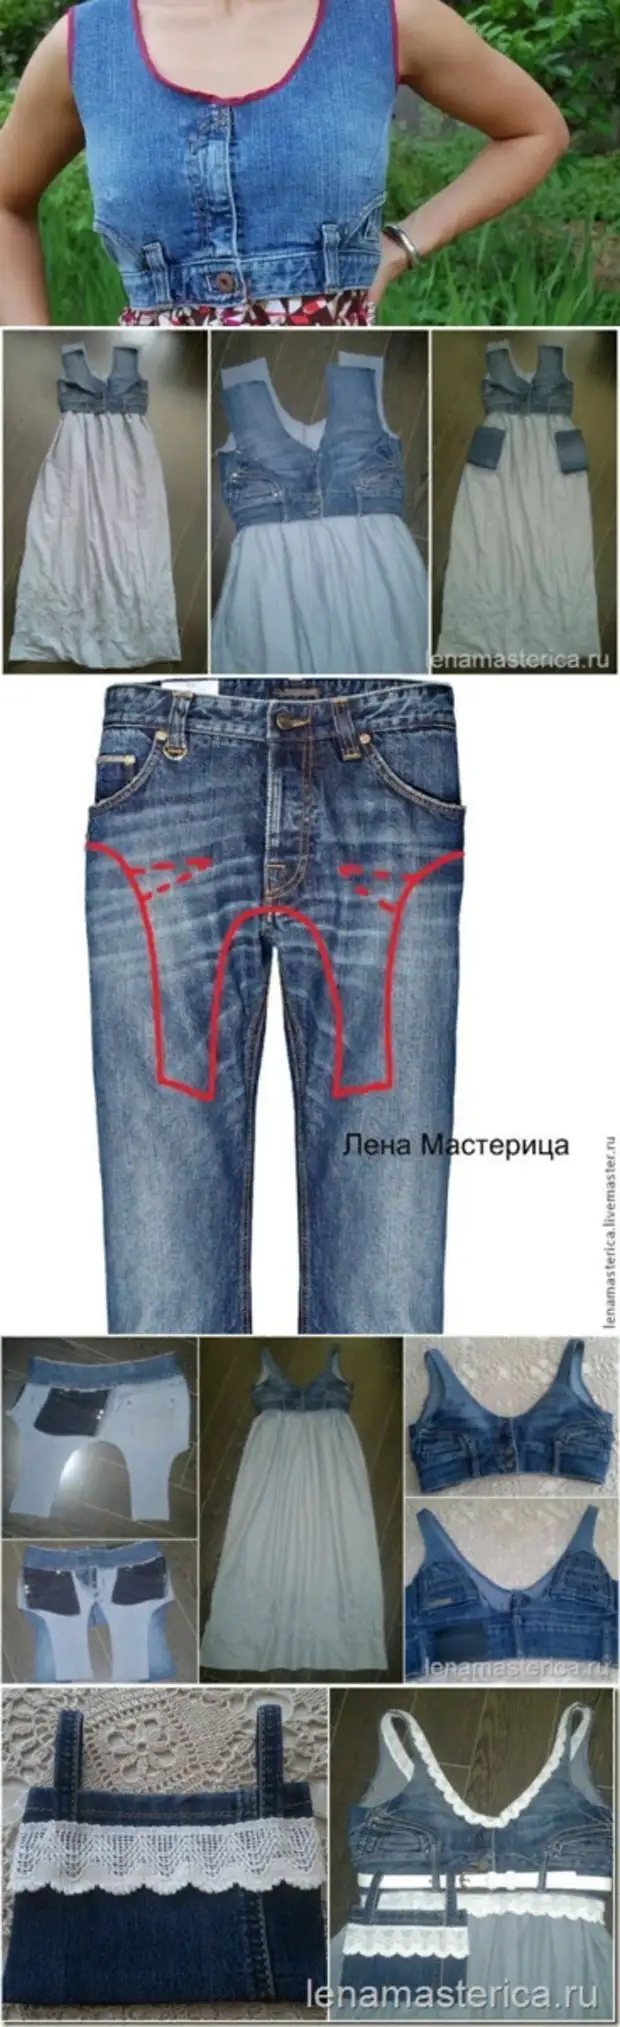 Переделанные джинсовые вещи